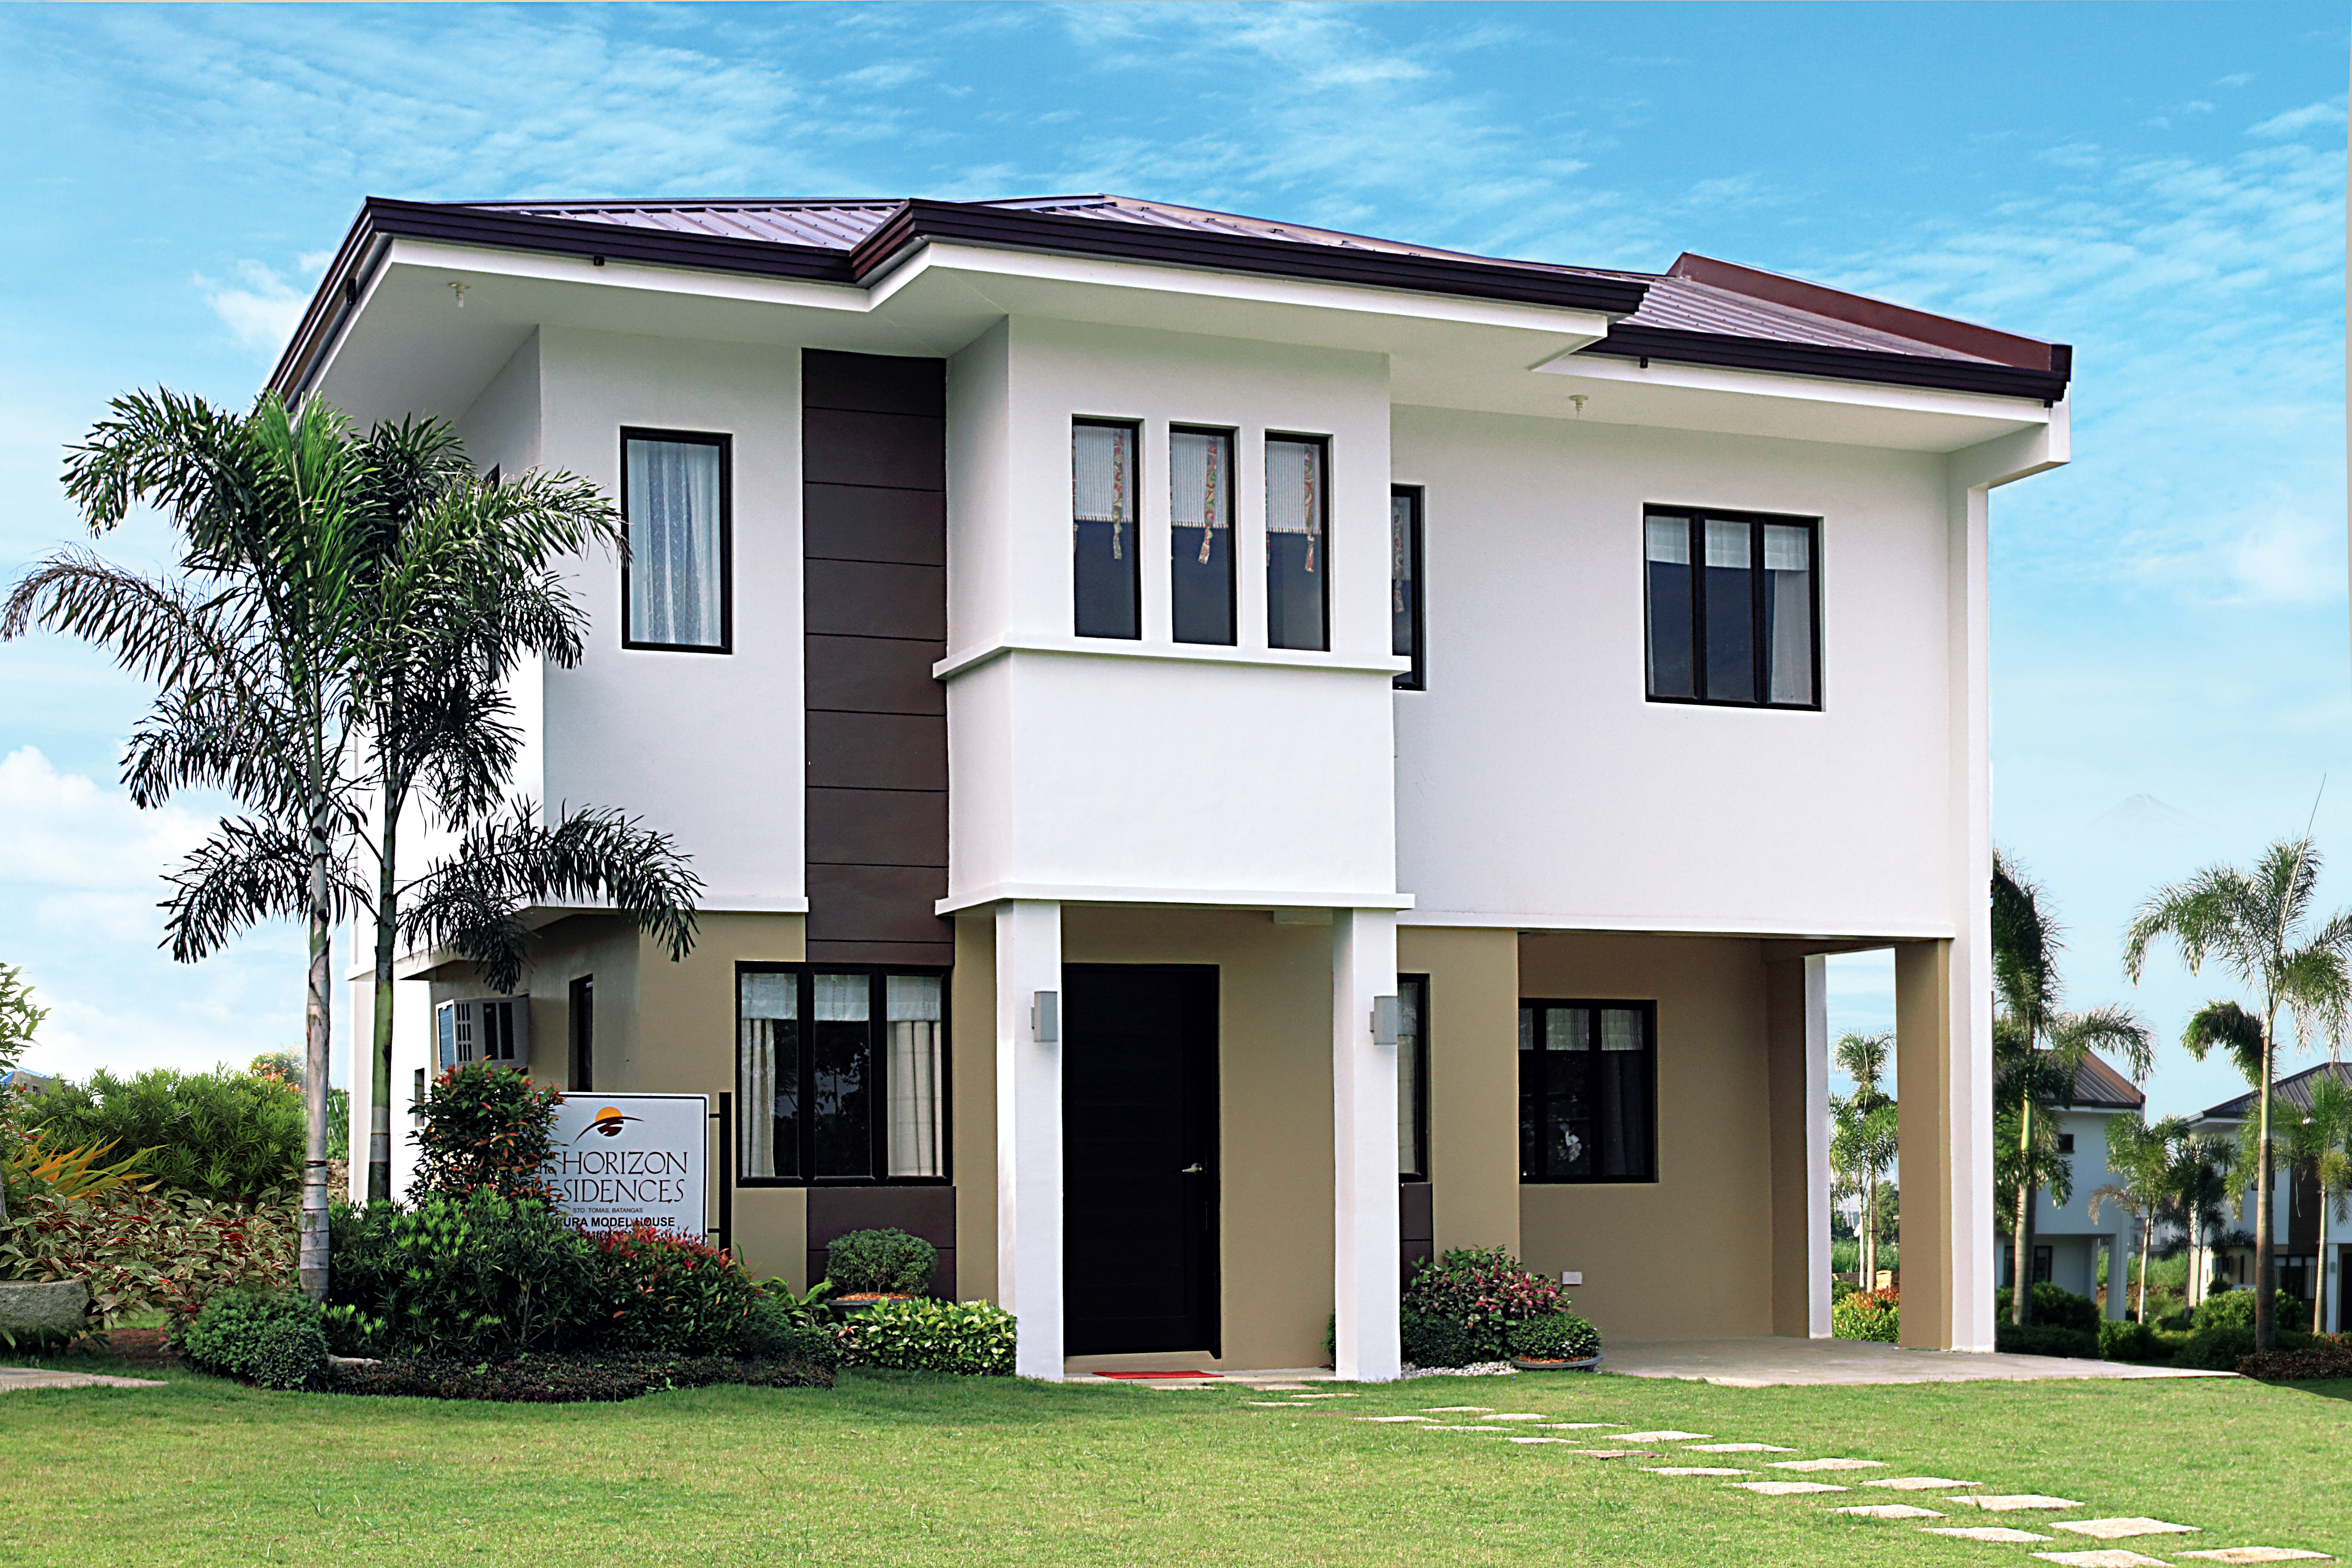 Horizon Residences Park Place Pampanga